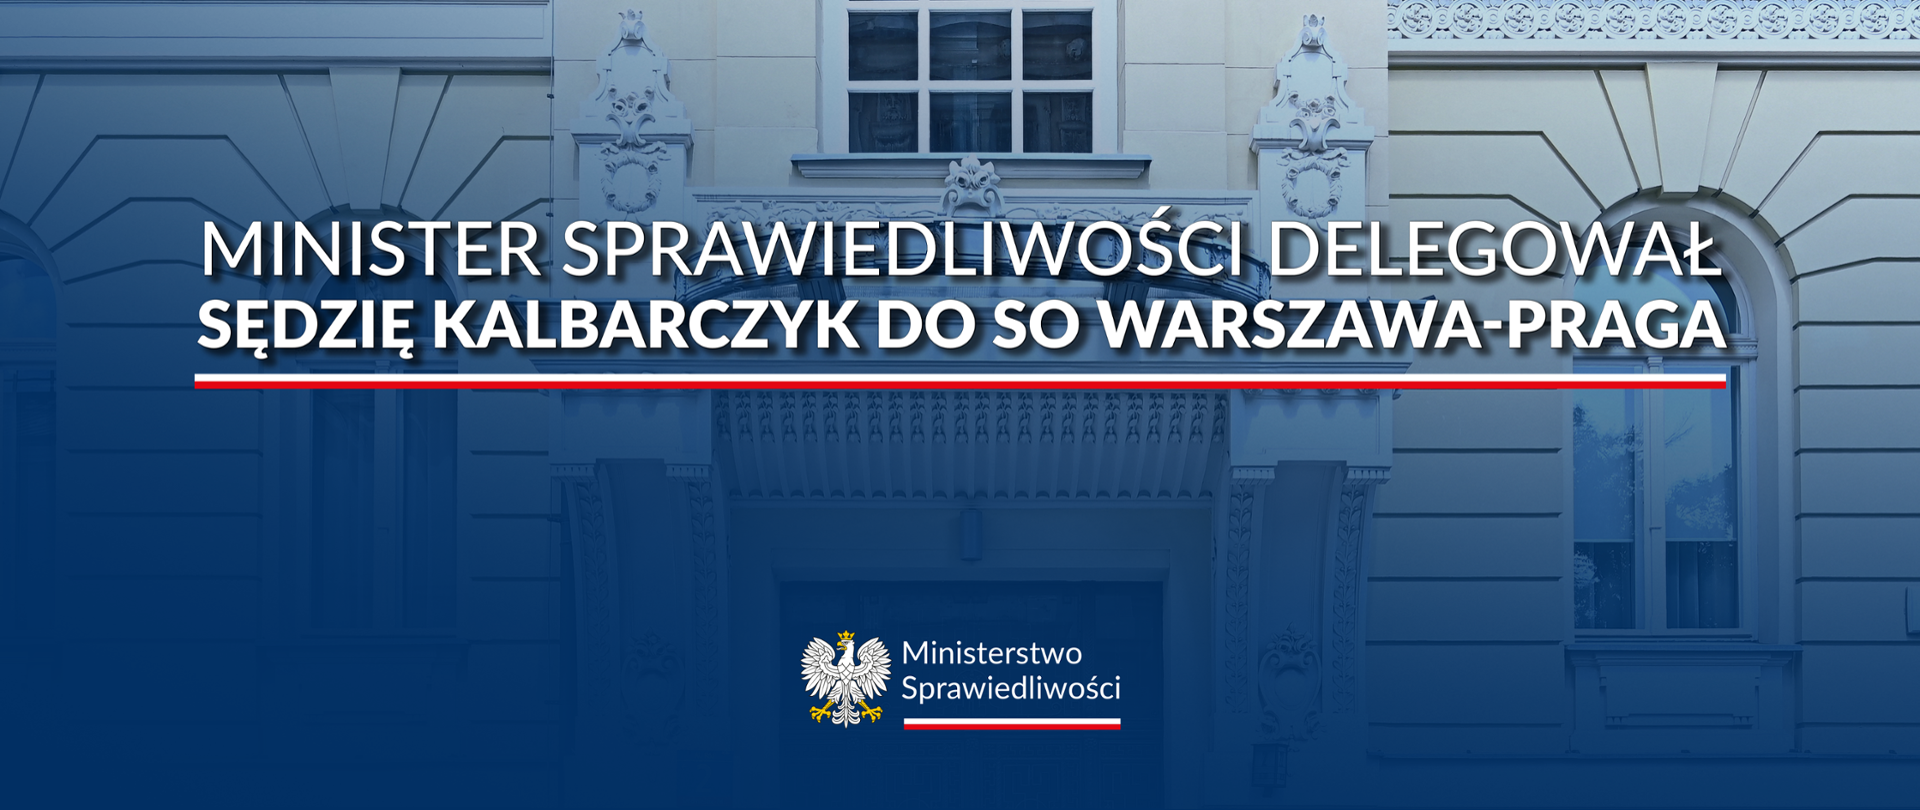 Minister Sprawiedliwości delegował sędzię Kalbarczyk do SO Warszawa-Praga